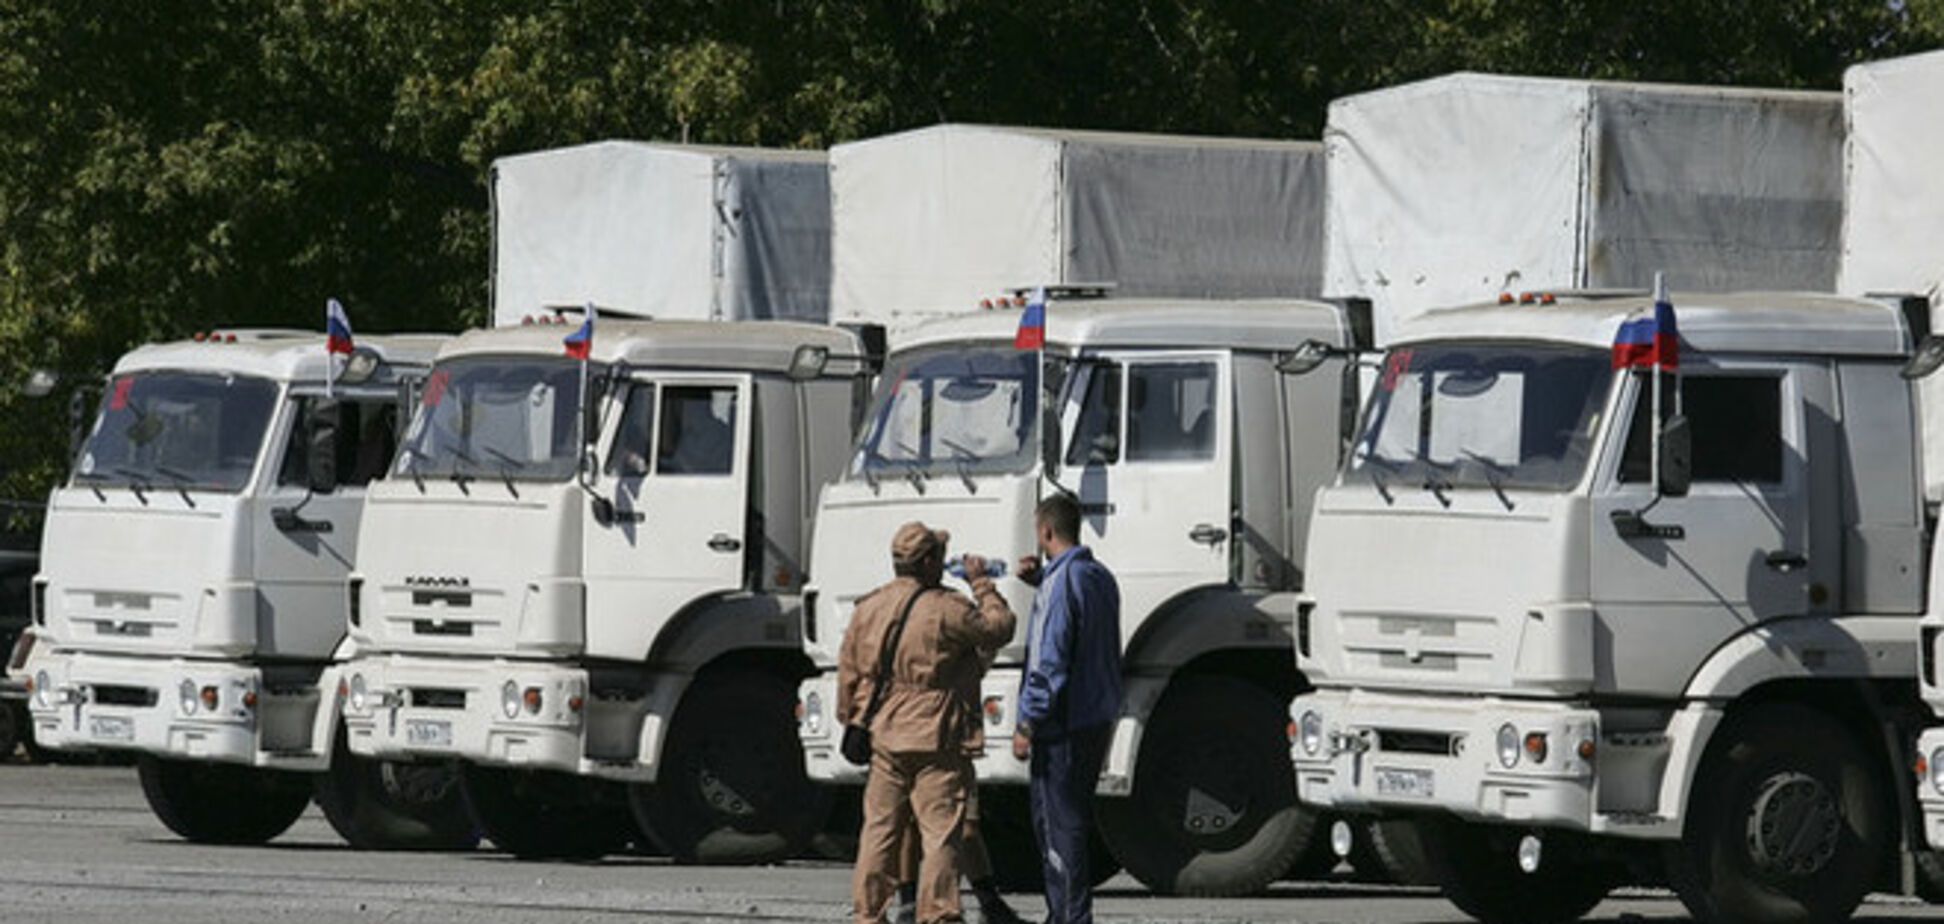 Российский 'гумконвой' привез в Луганск снаряды и станки для печати гривни - активист